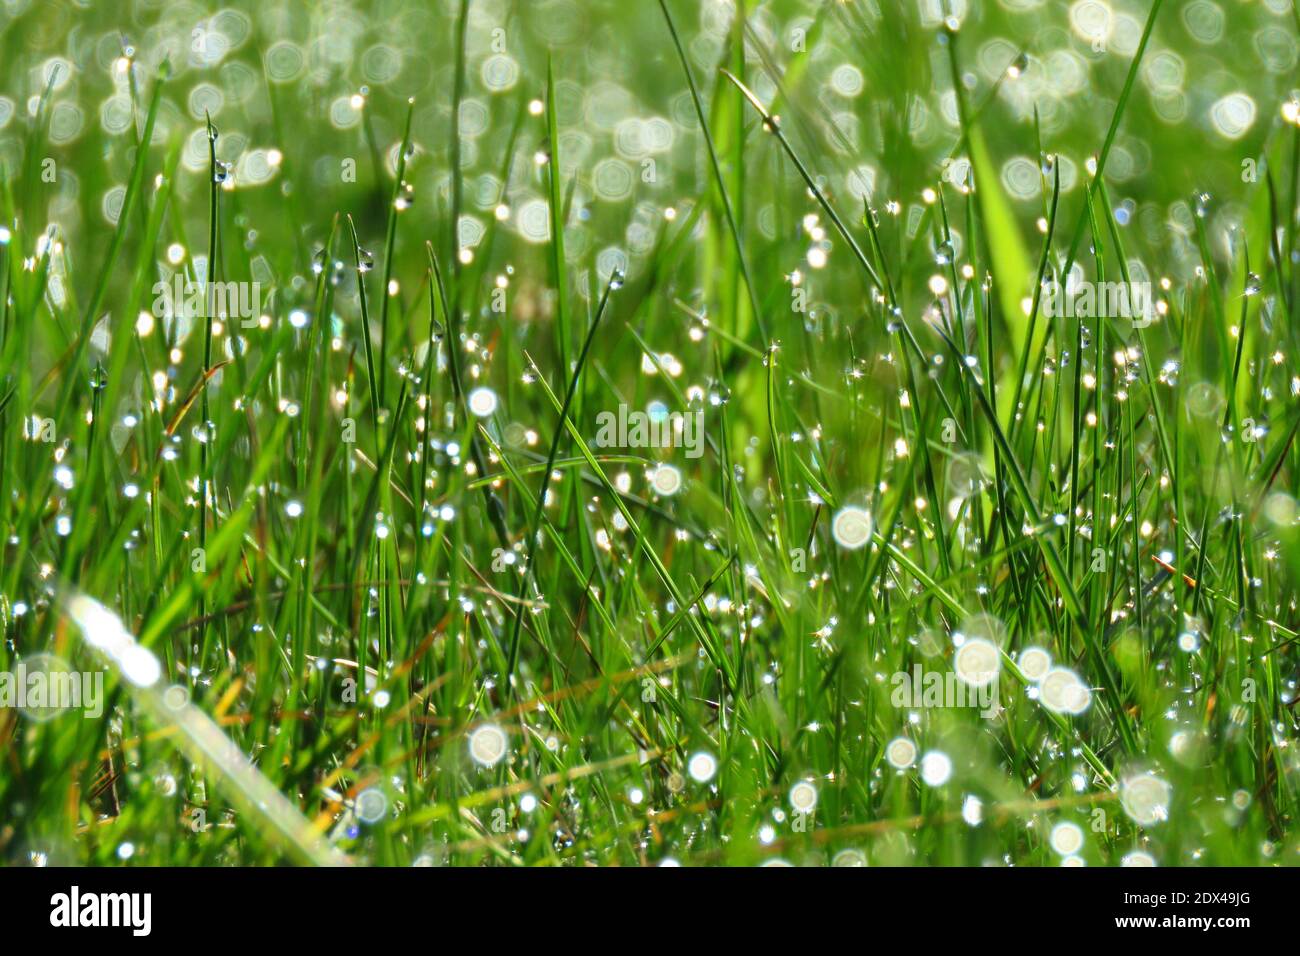 Full Frame Shot Of Wet Plants On Field Stock Photo